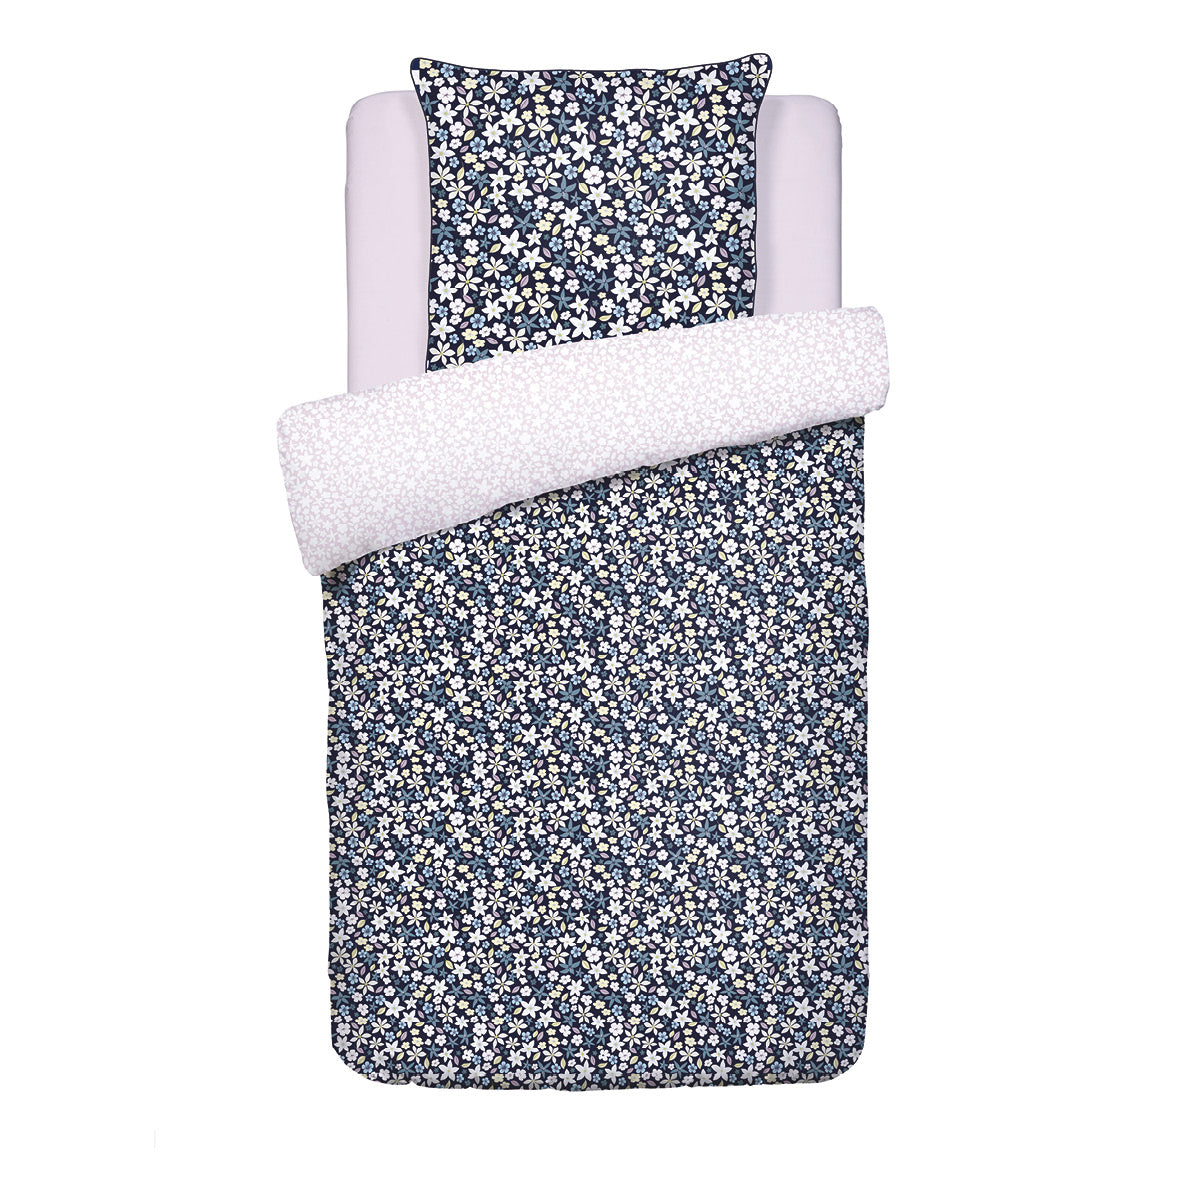 Duvet cover + pillowcase(s) cotton satin - Etoile de Printemps Blue